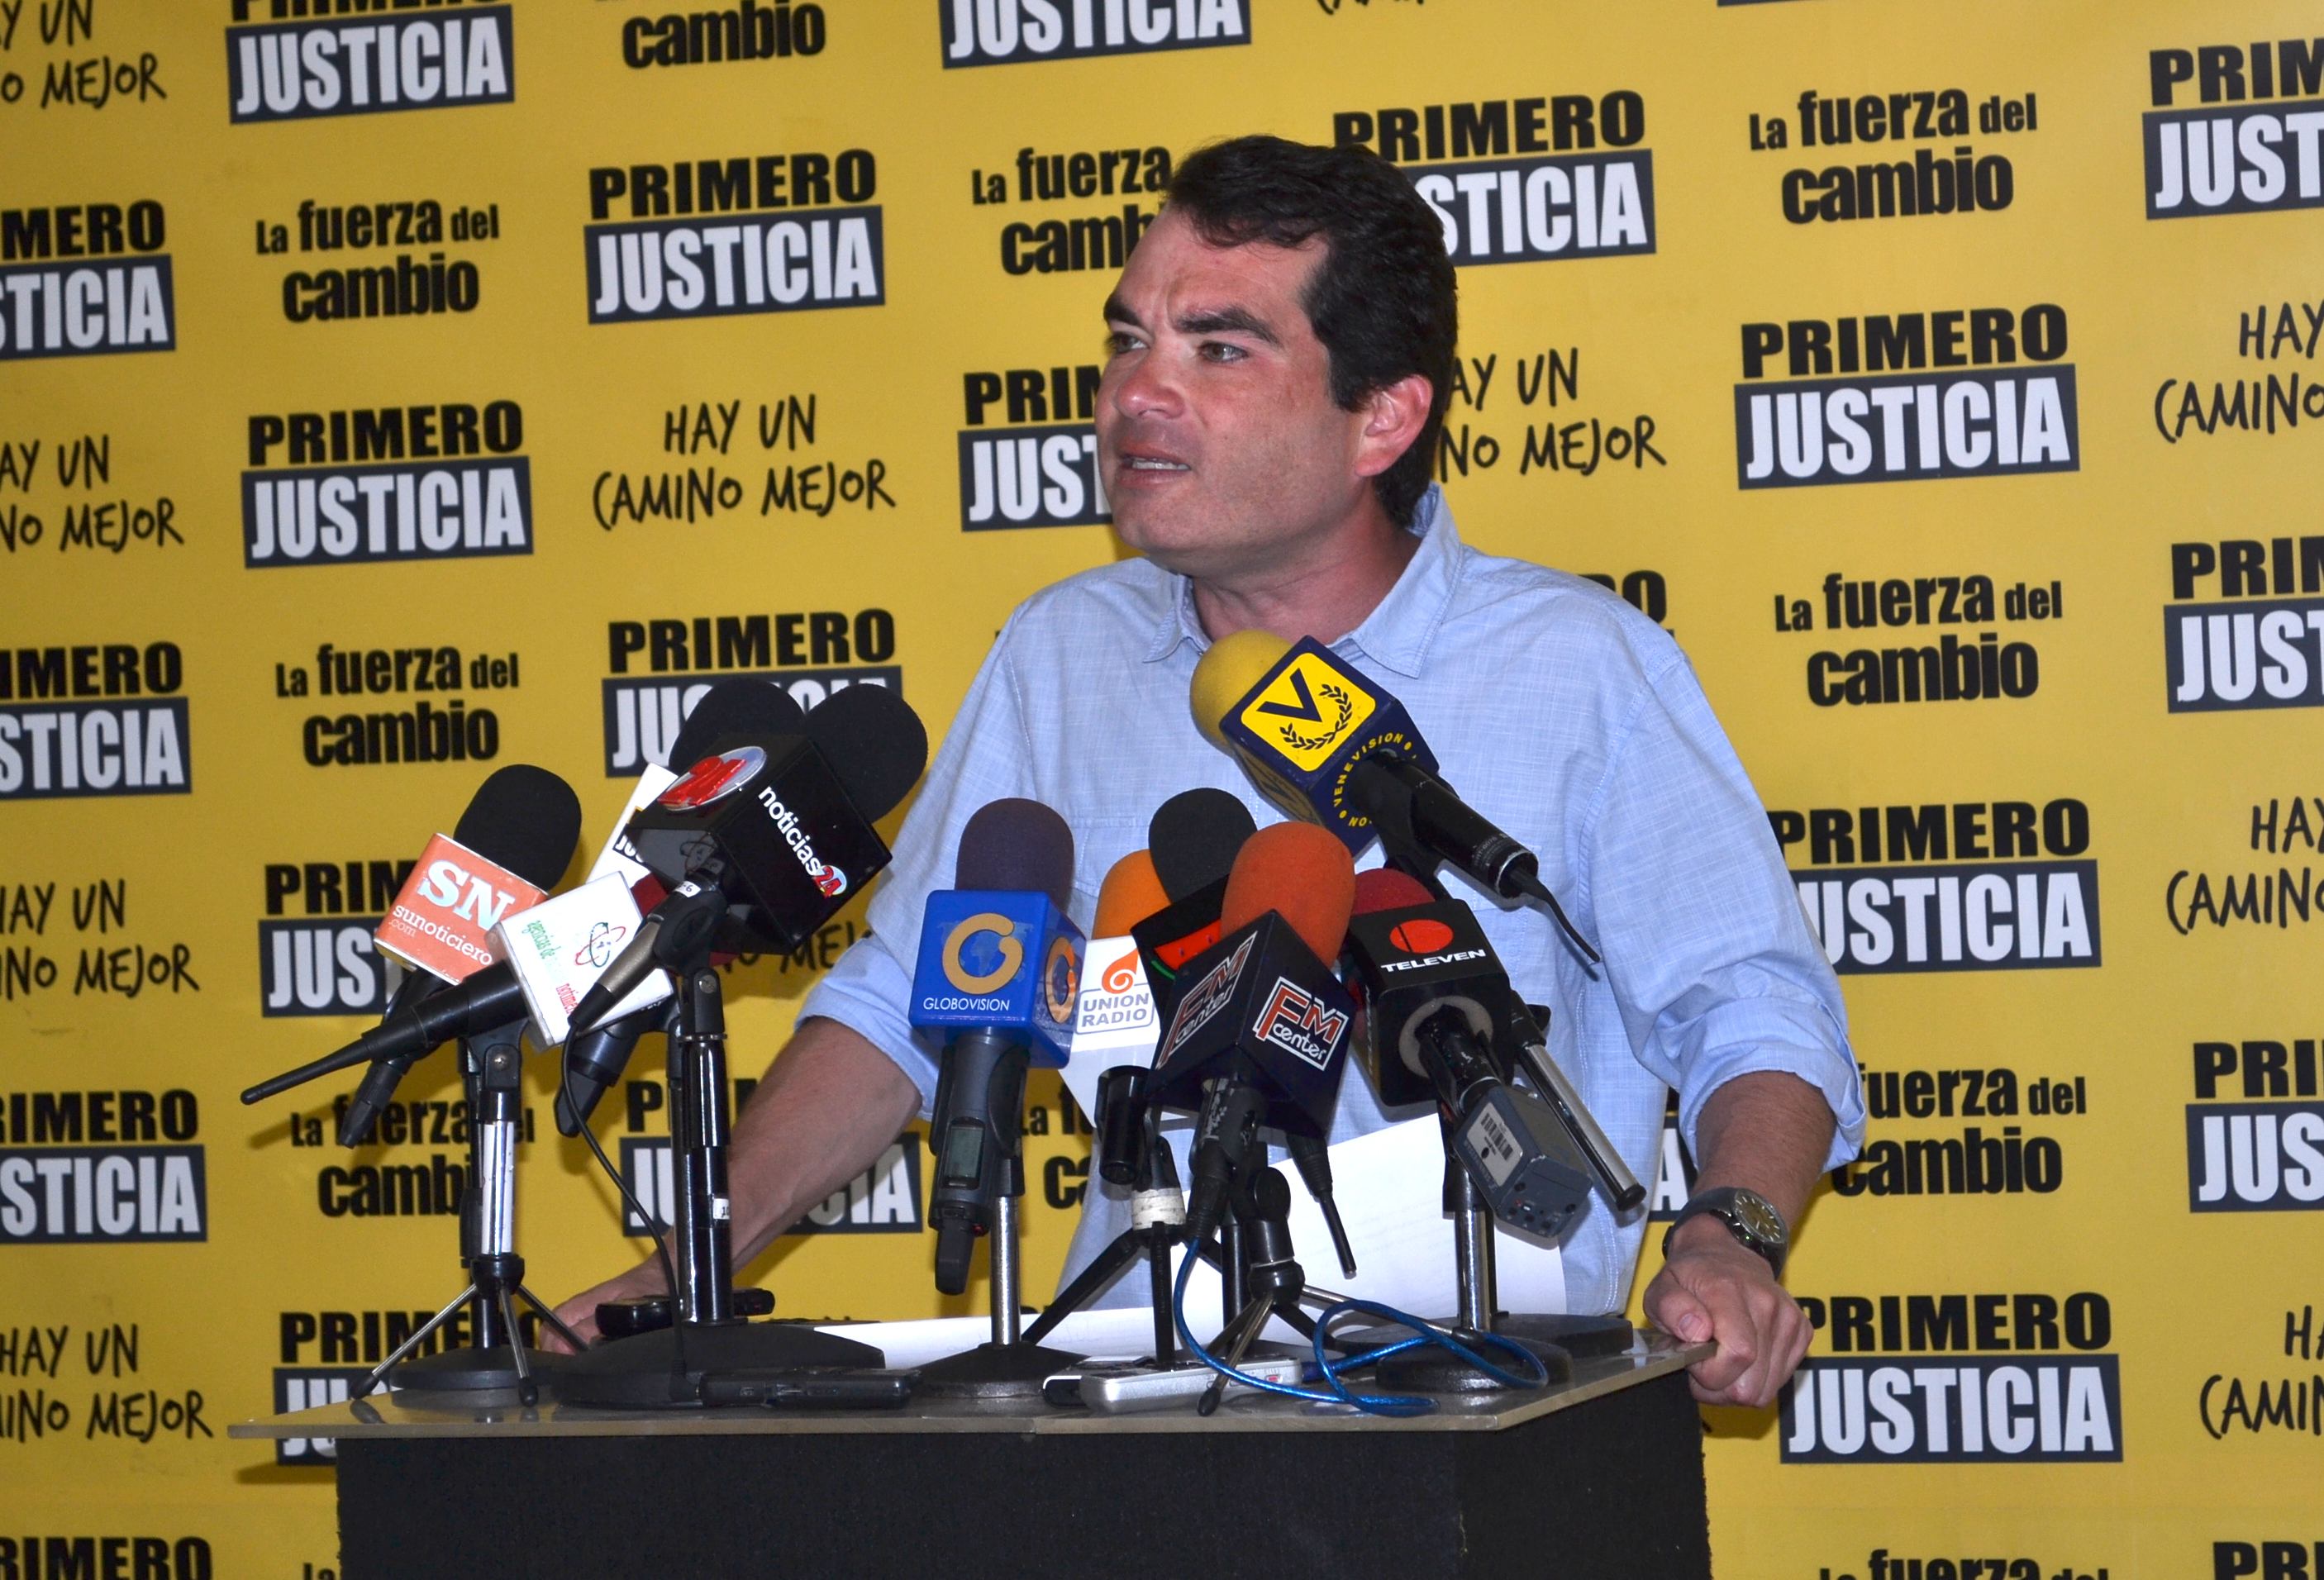 Guanipa: Qué dirá el gobierno hoy del revolcón que se dio en San Diego y San Cristóbal